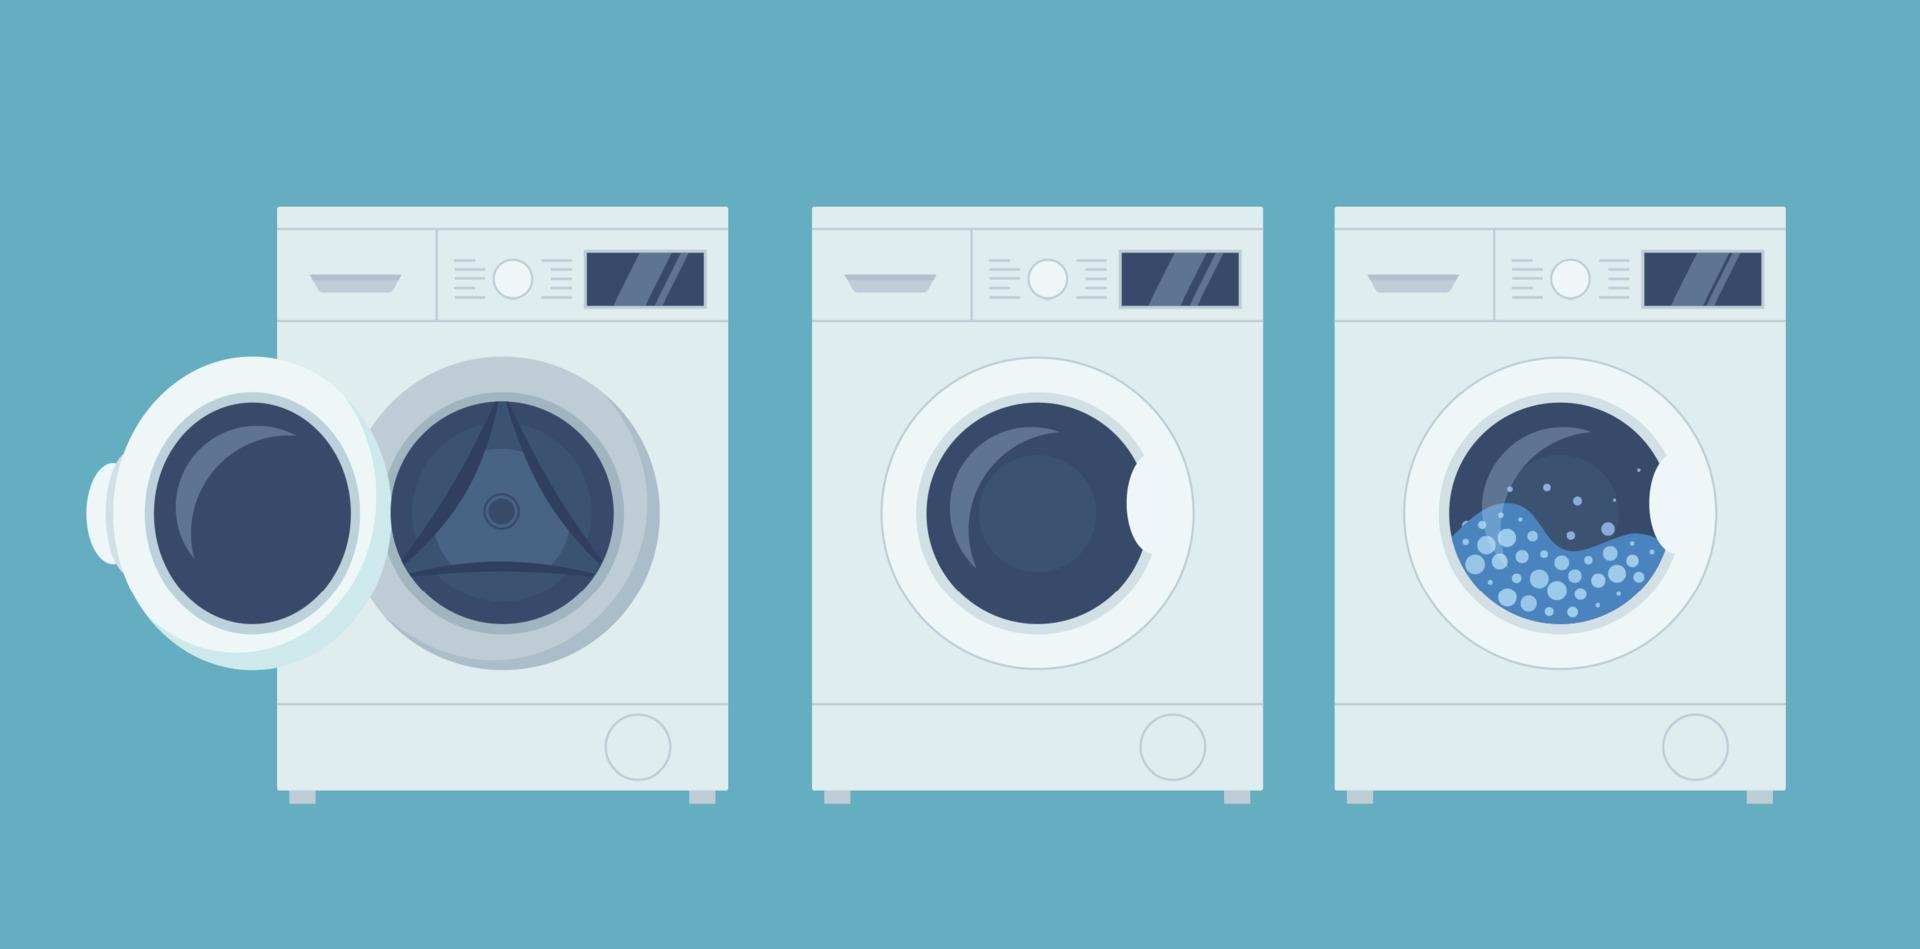 máquinas de lavar e secar. ilustração em vetor plana.